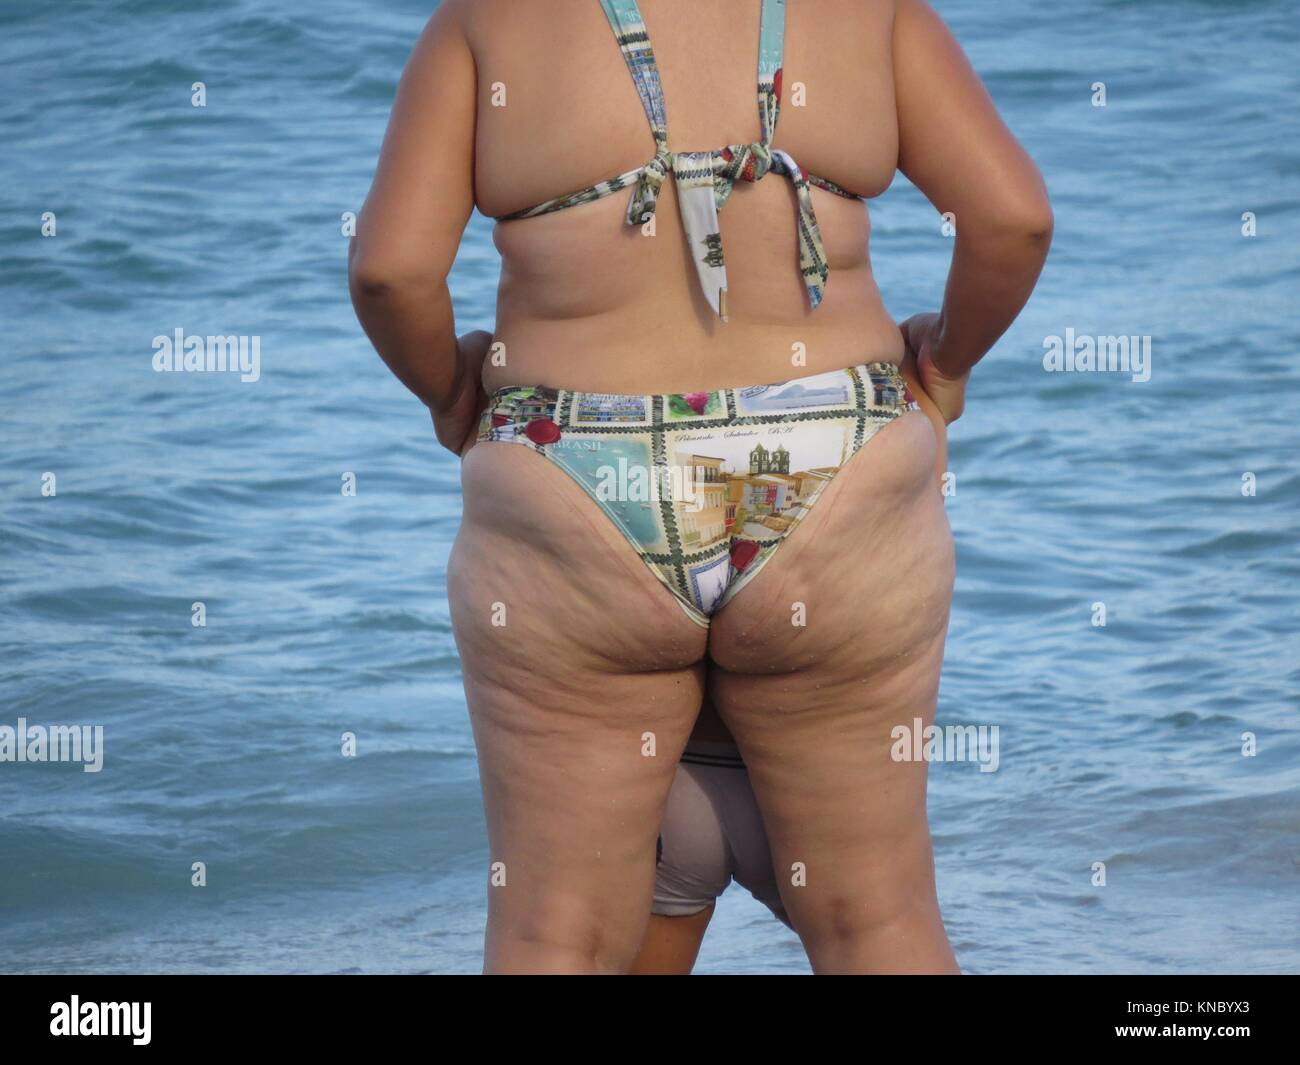 La cellulite en maillot de bain Photo Stock - Alamy